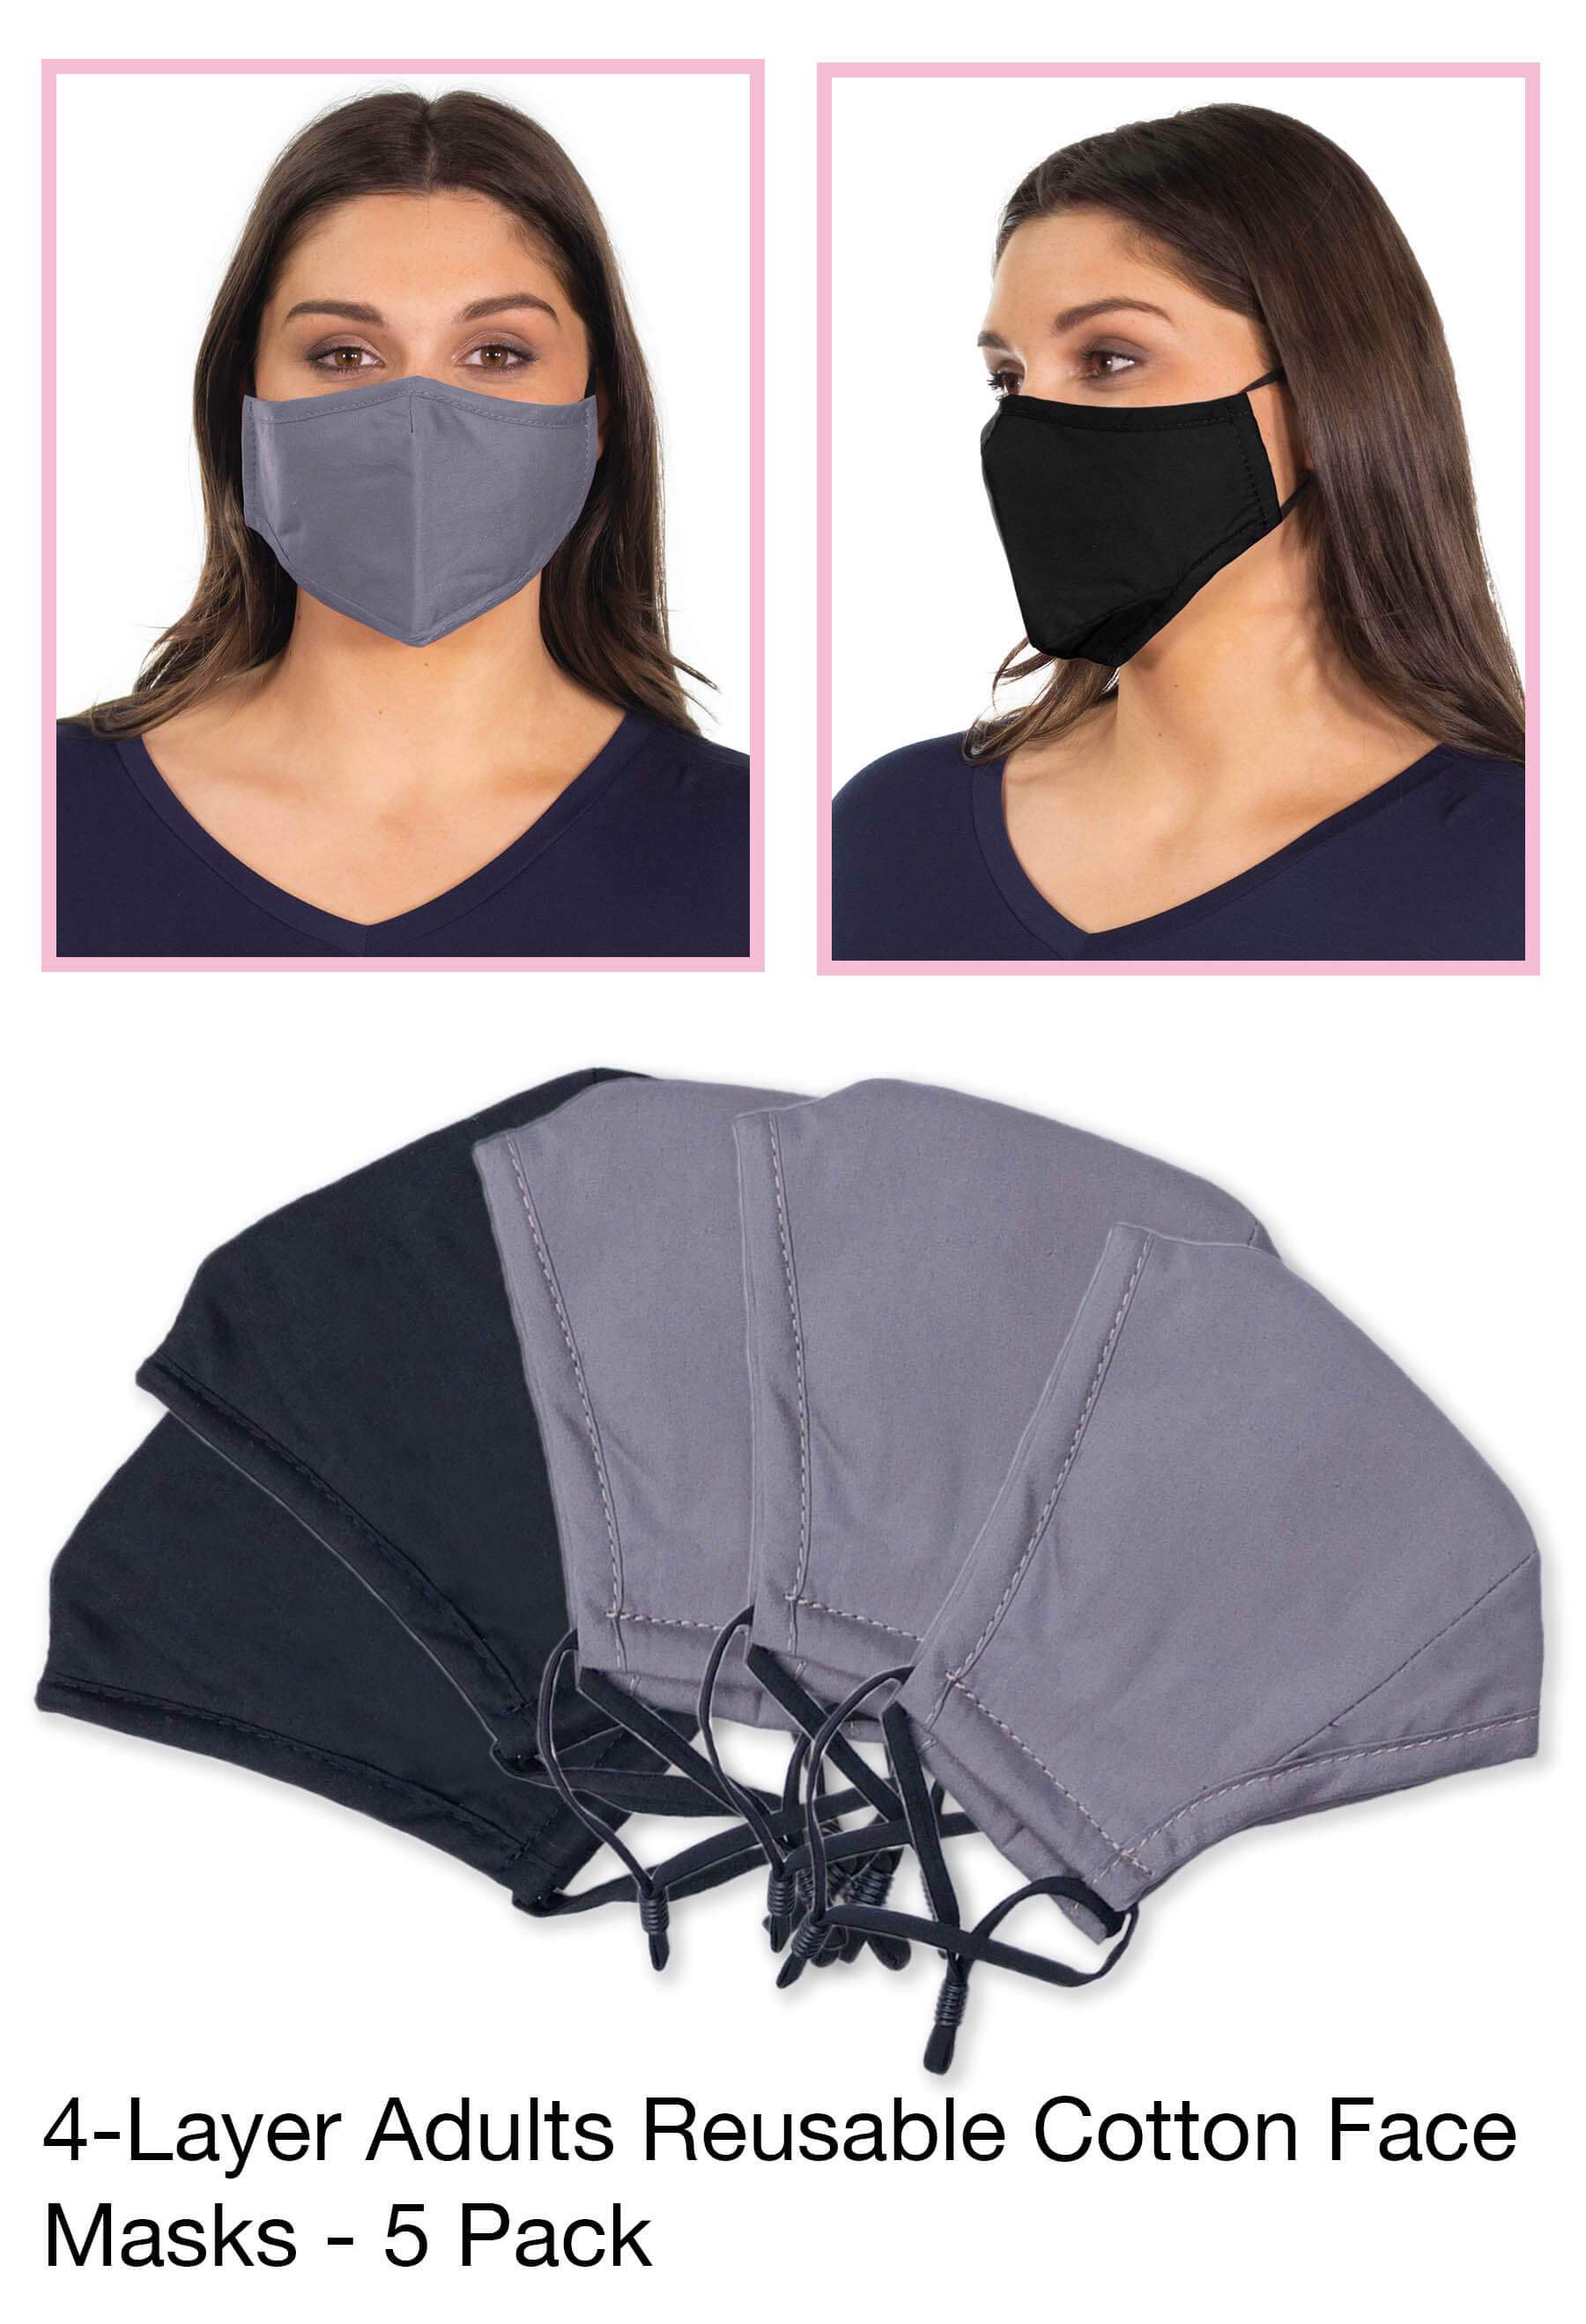 Reusable Cotton Face Masks - 5 Pack